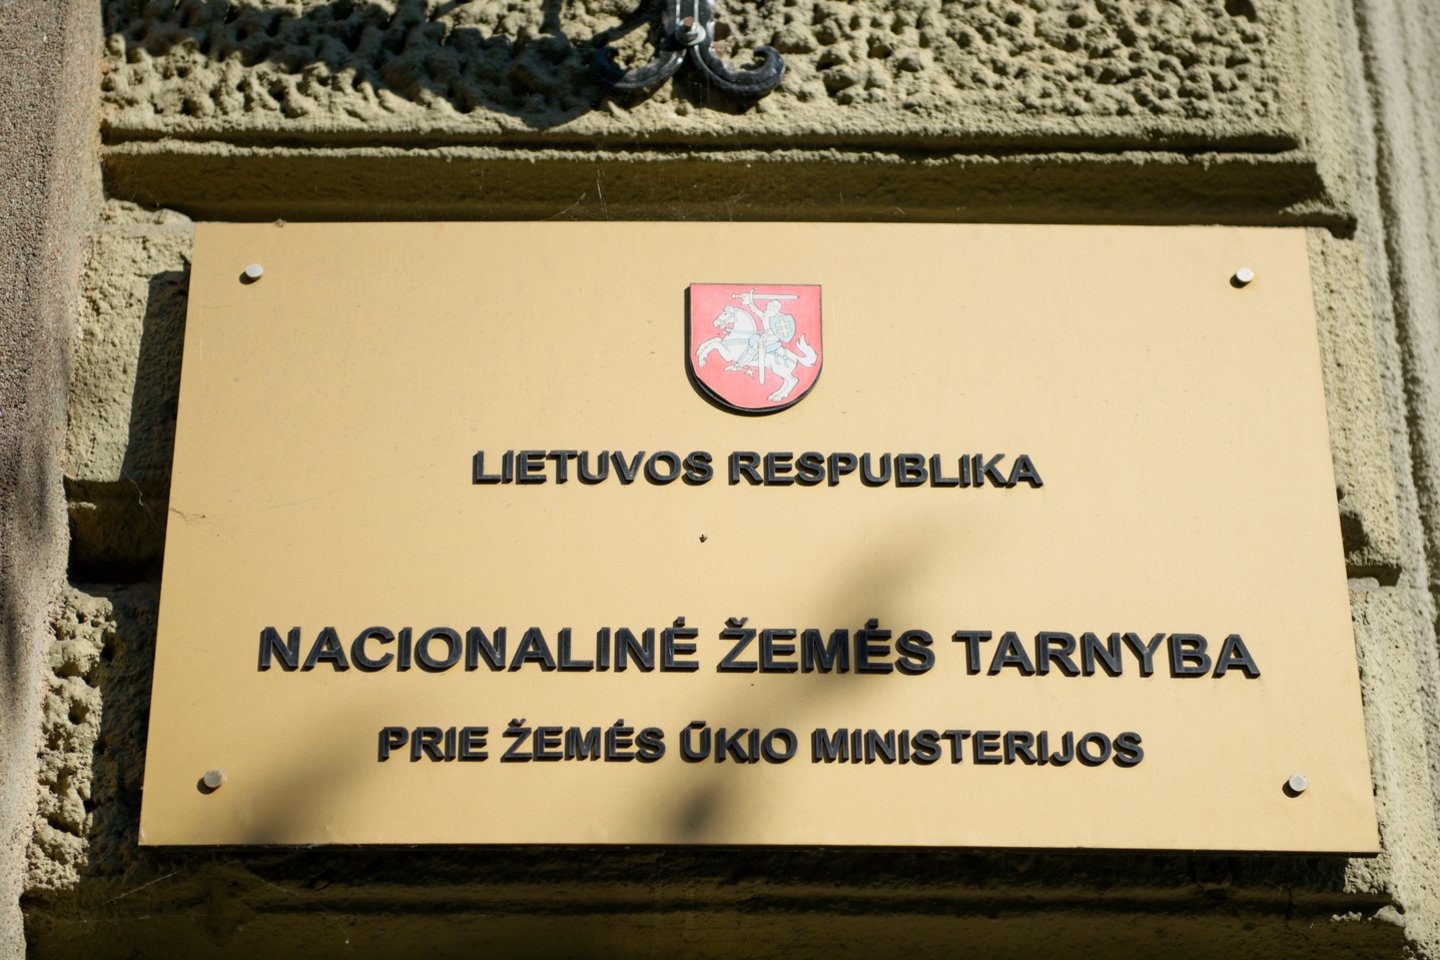 Žemės tarnybos siunčiami laiškai nepasiekia dalies žmonių: viskas dėl naujos Lietuvos pašto sistemos.<br>J.Stacevičiaus nuotr.